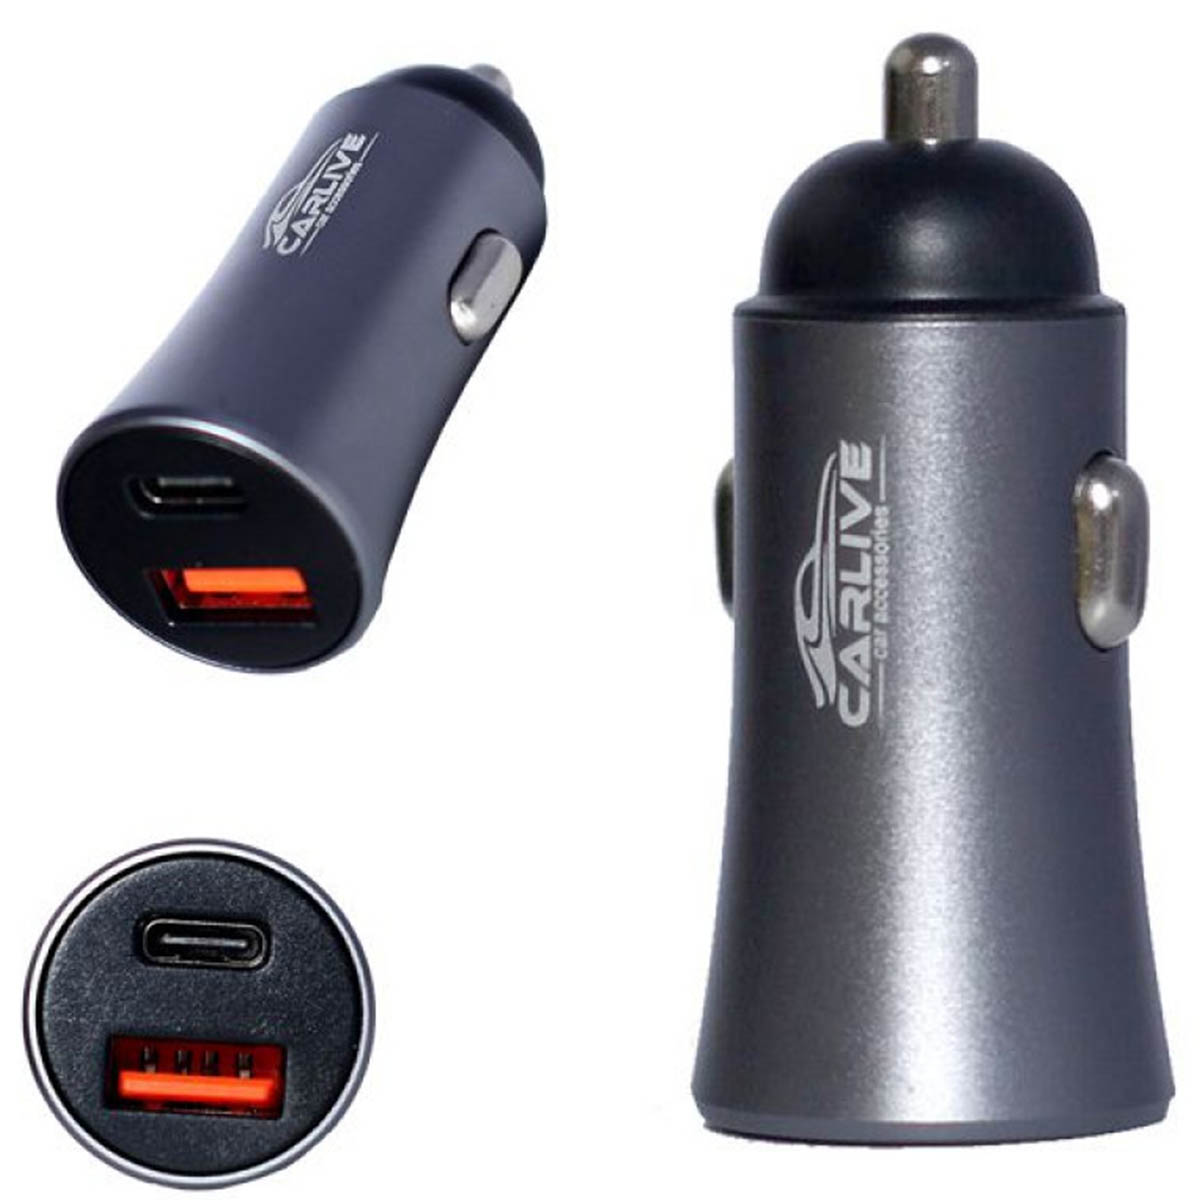 АЗУ (Автомобильное зарядное устройство) CARLIVE MR66, 1 USB QC 3.0, 1 Type-C, цвет серебристый